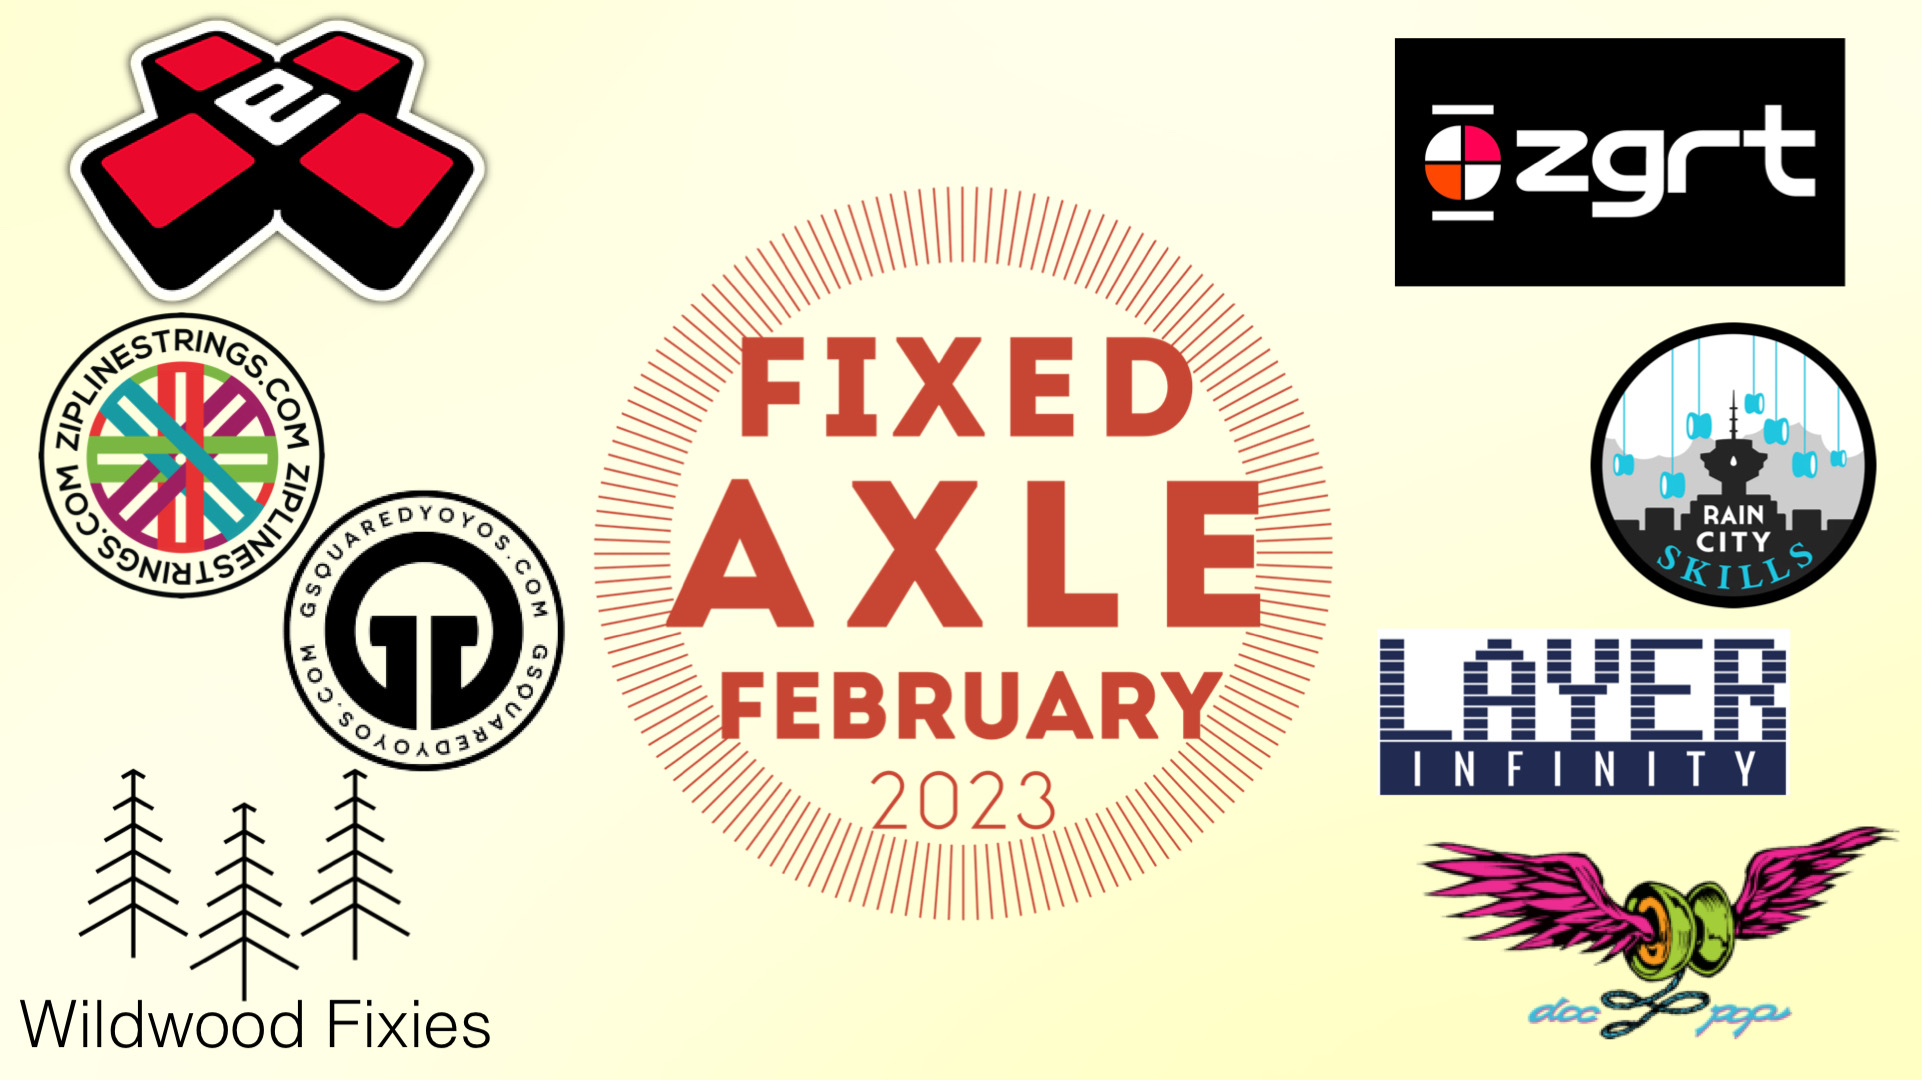 Fixed Axle February 2023